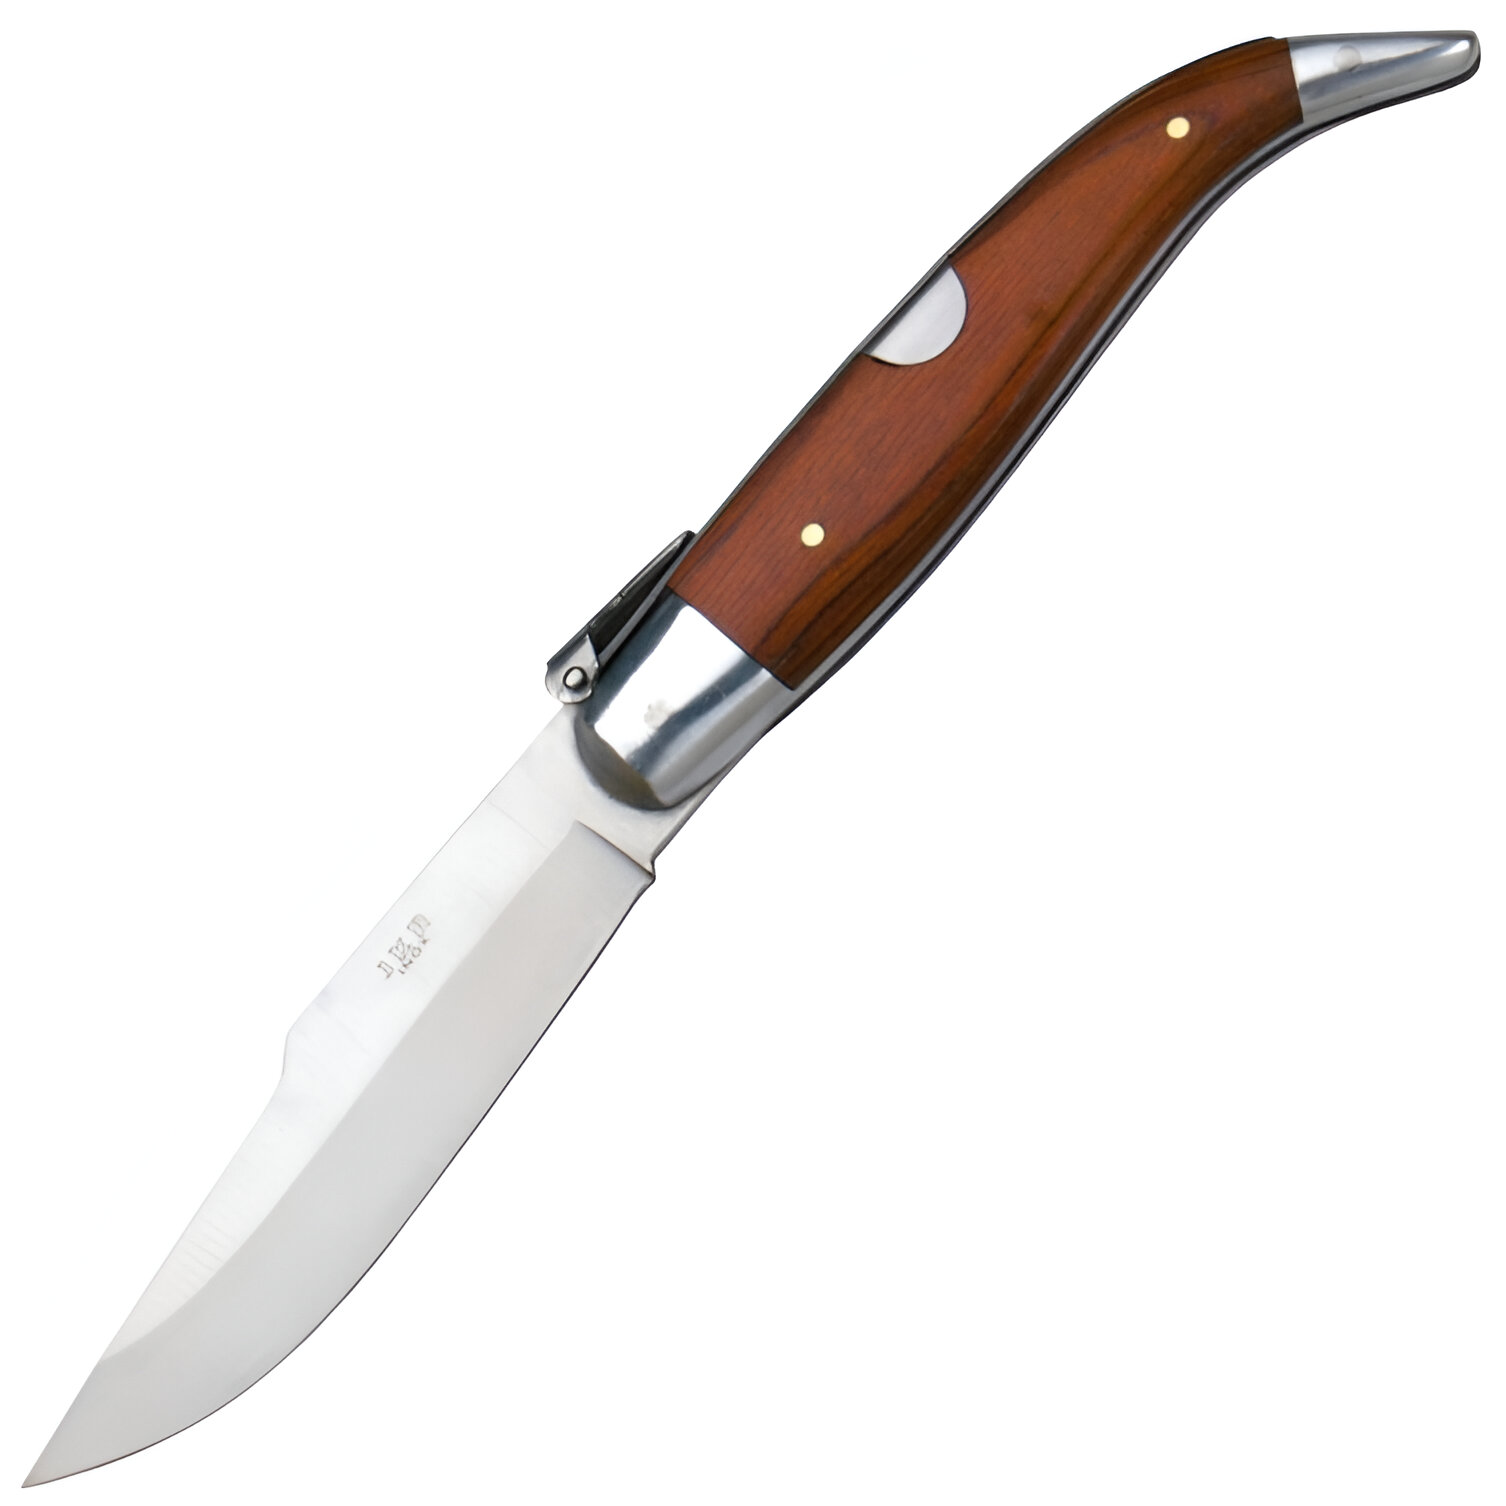 JKR Tradiční španělský zavírací nůž s čepelí 9,5 cm a střenkami z červeného dřeva